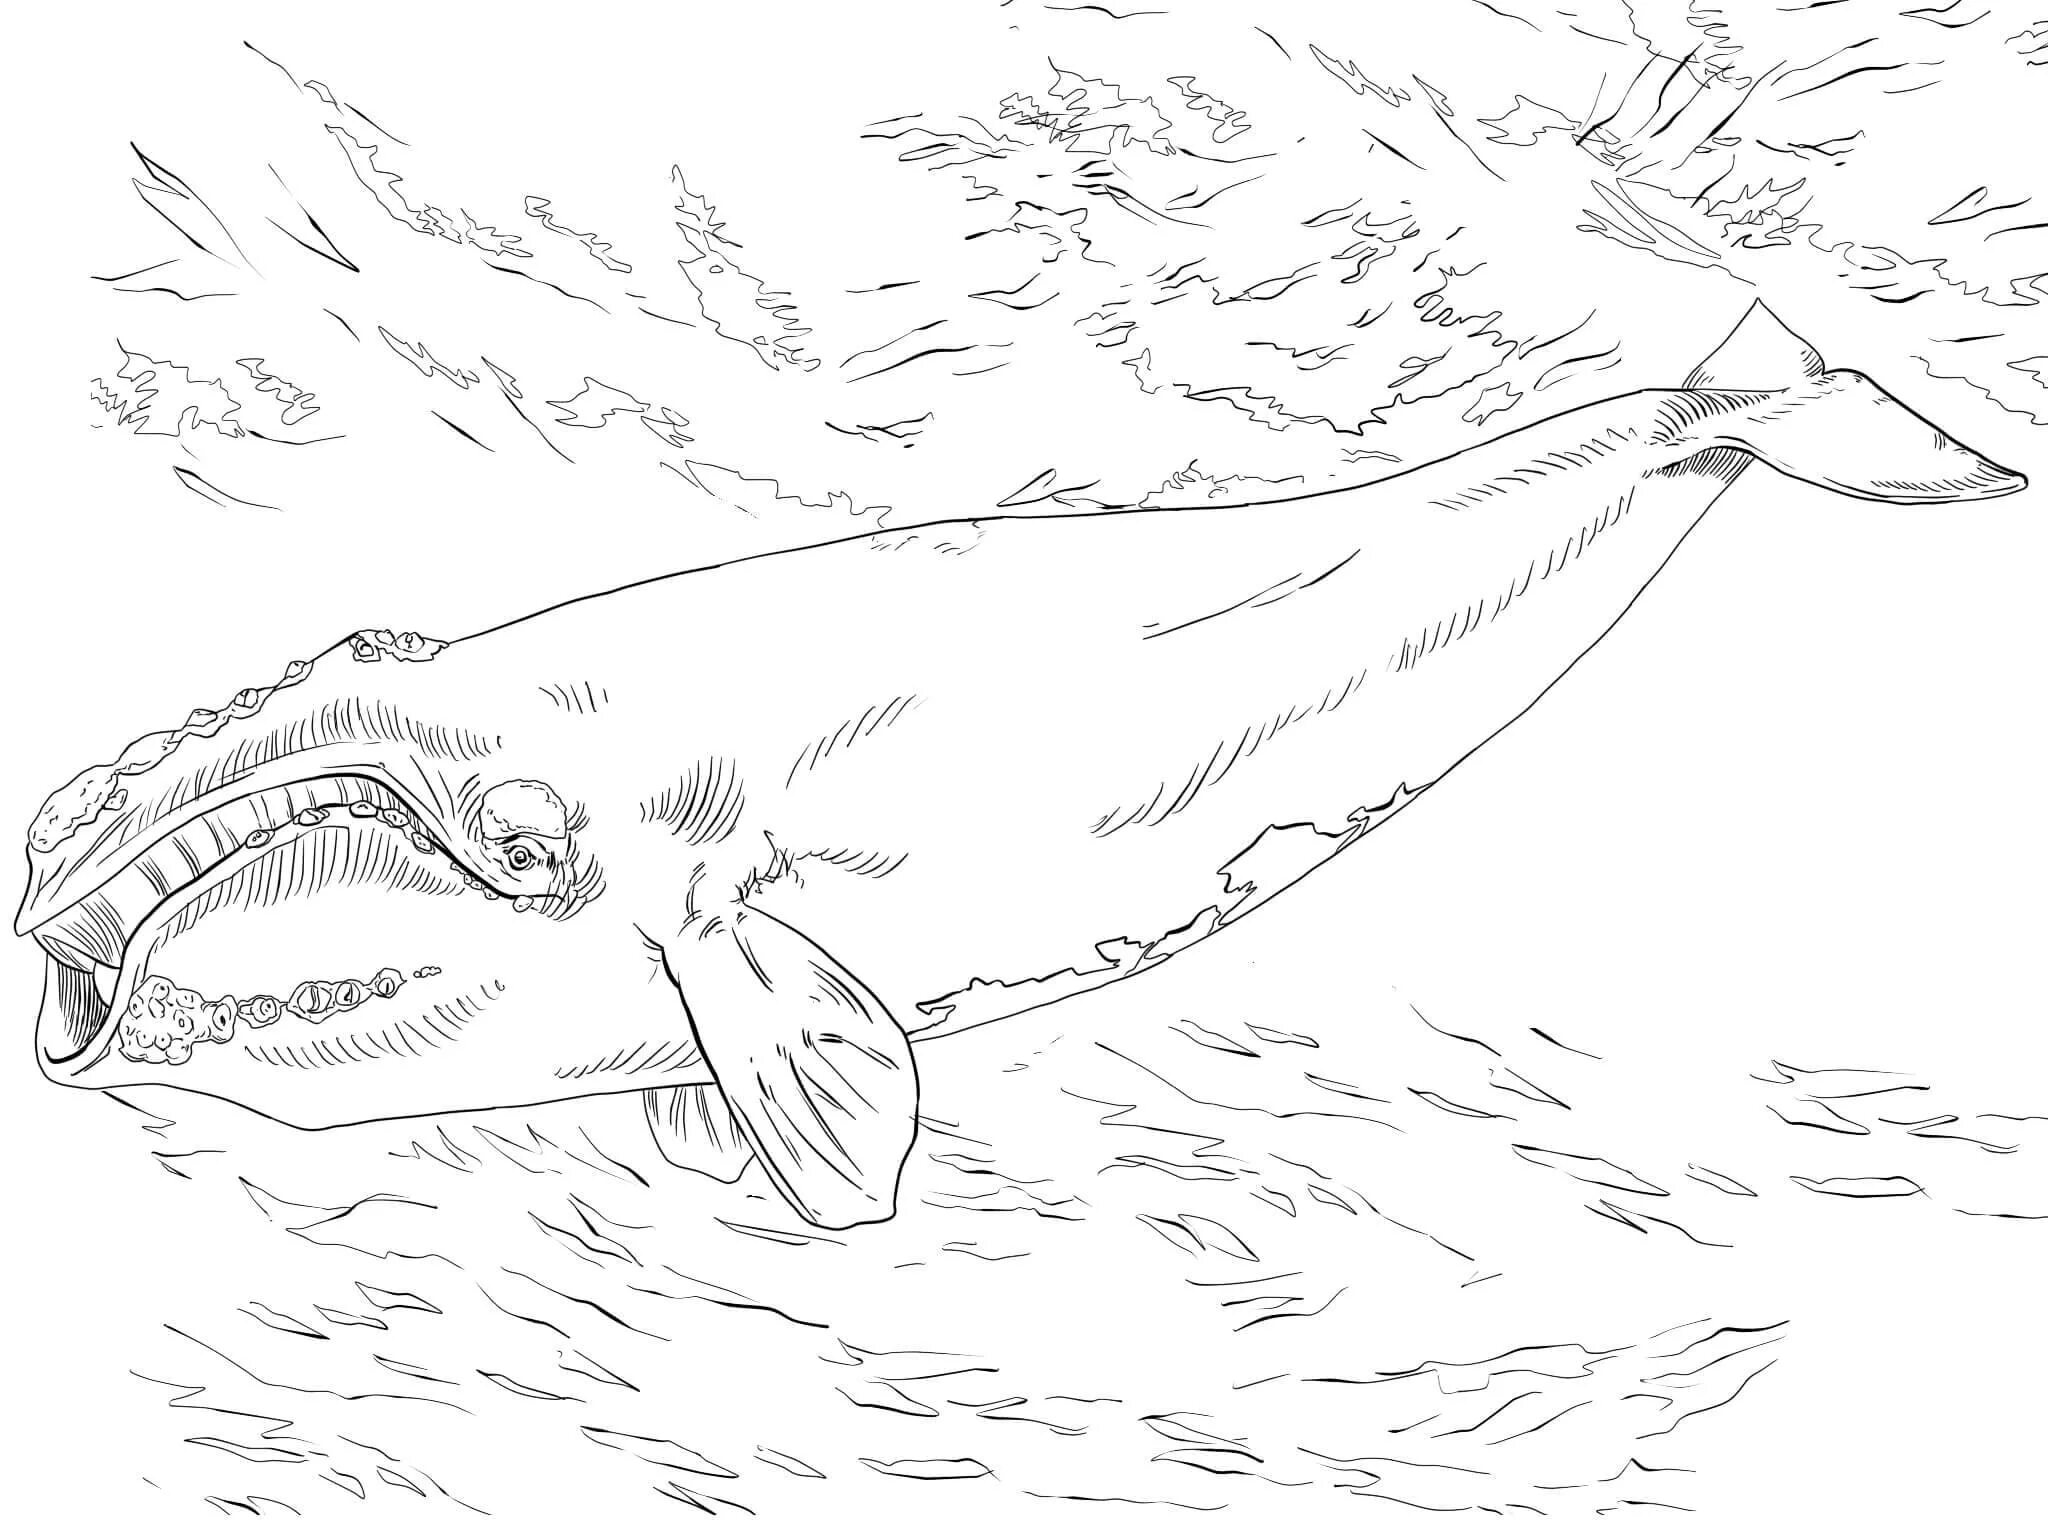 Bowhead whale #6